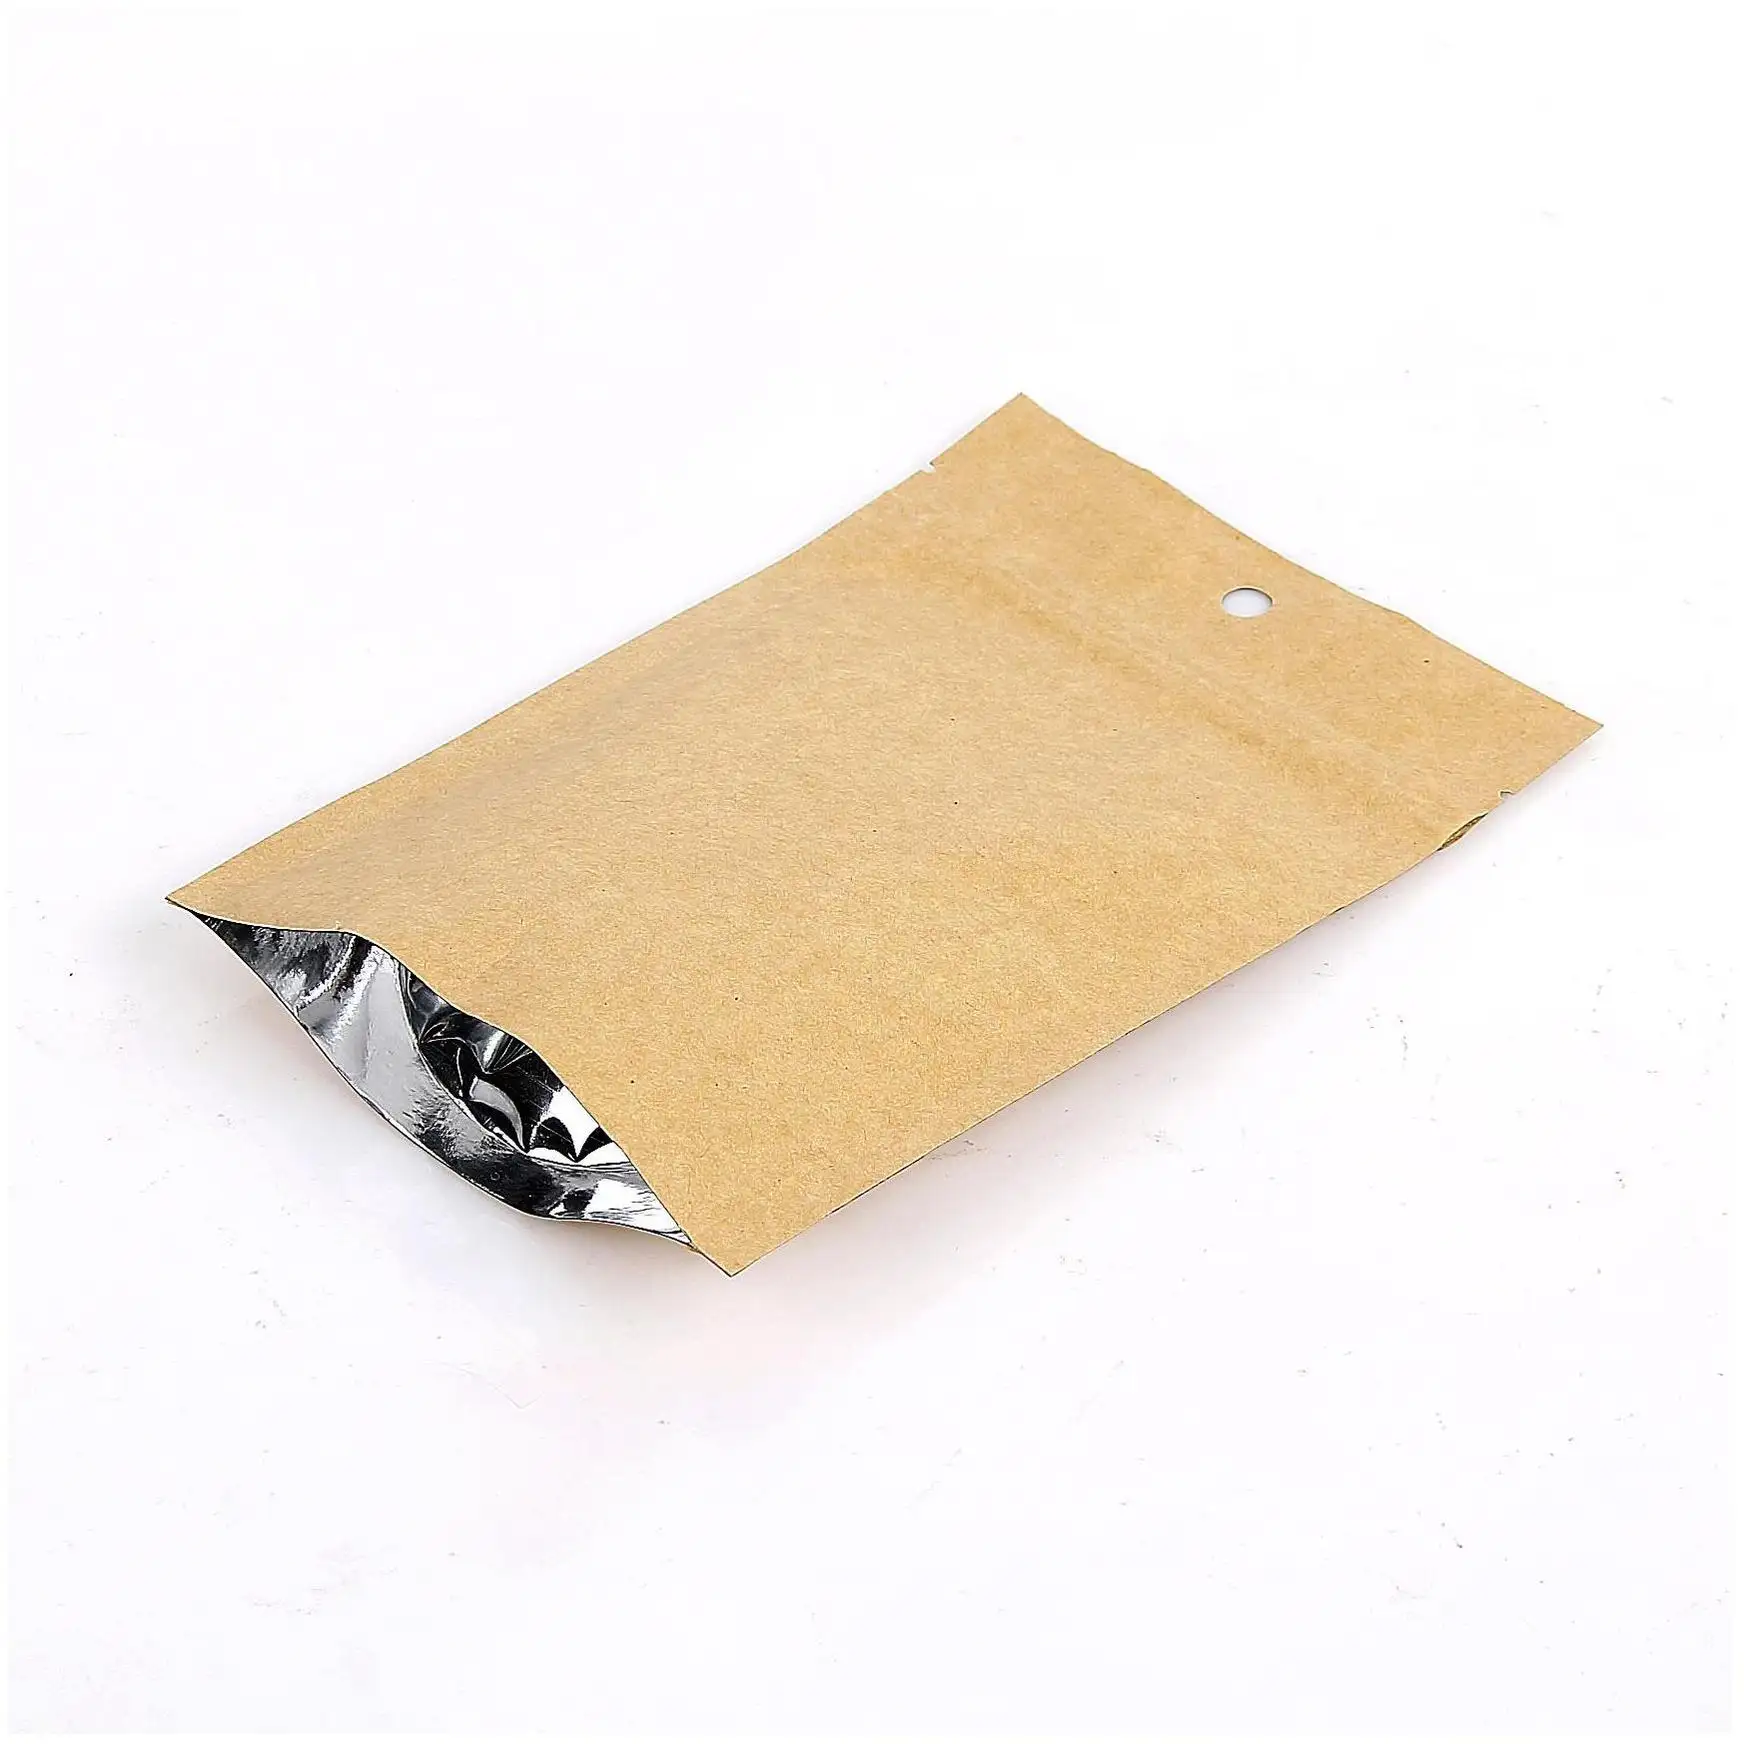 Kraft kağıt torba vana bakkal fırın Mini baskılı mailler açılıp kapanabilir kahverengi Zip Zip kilit dayanaklı kağıt torba kolu ile